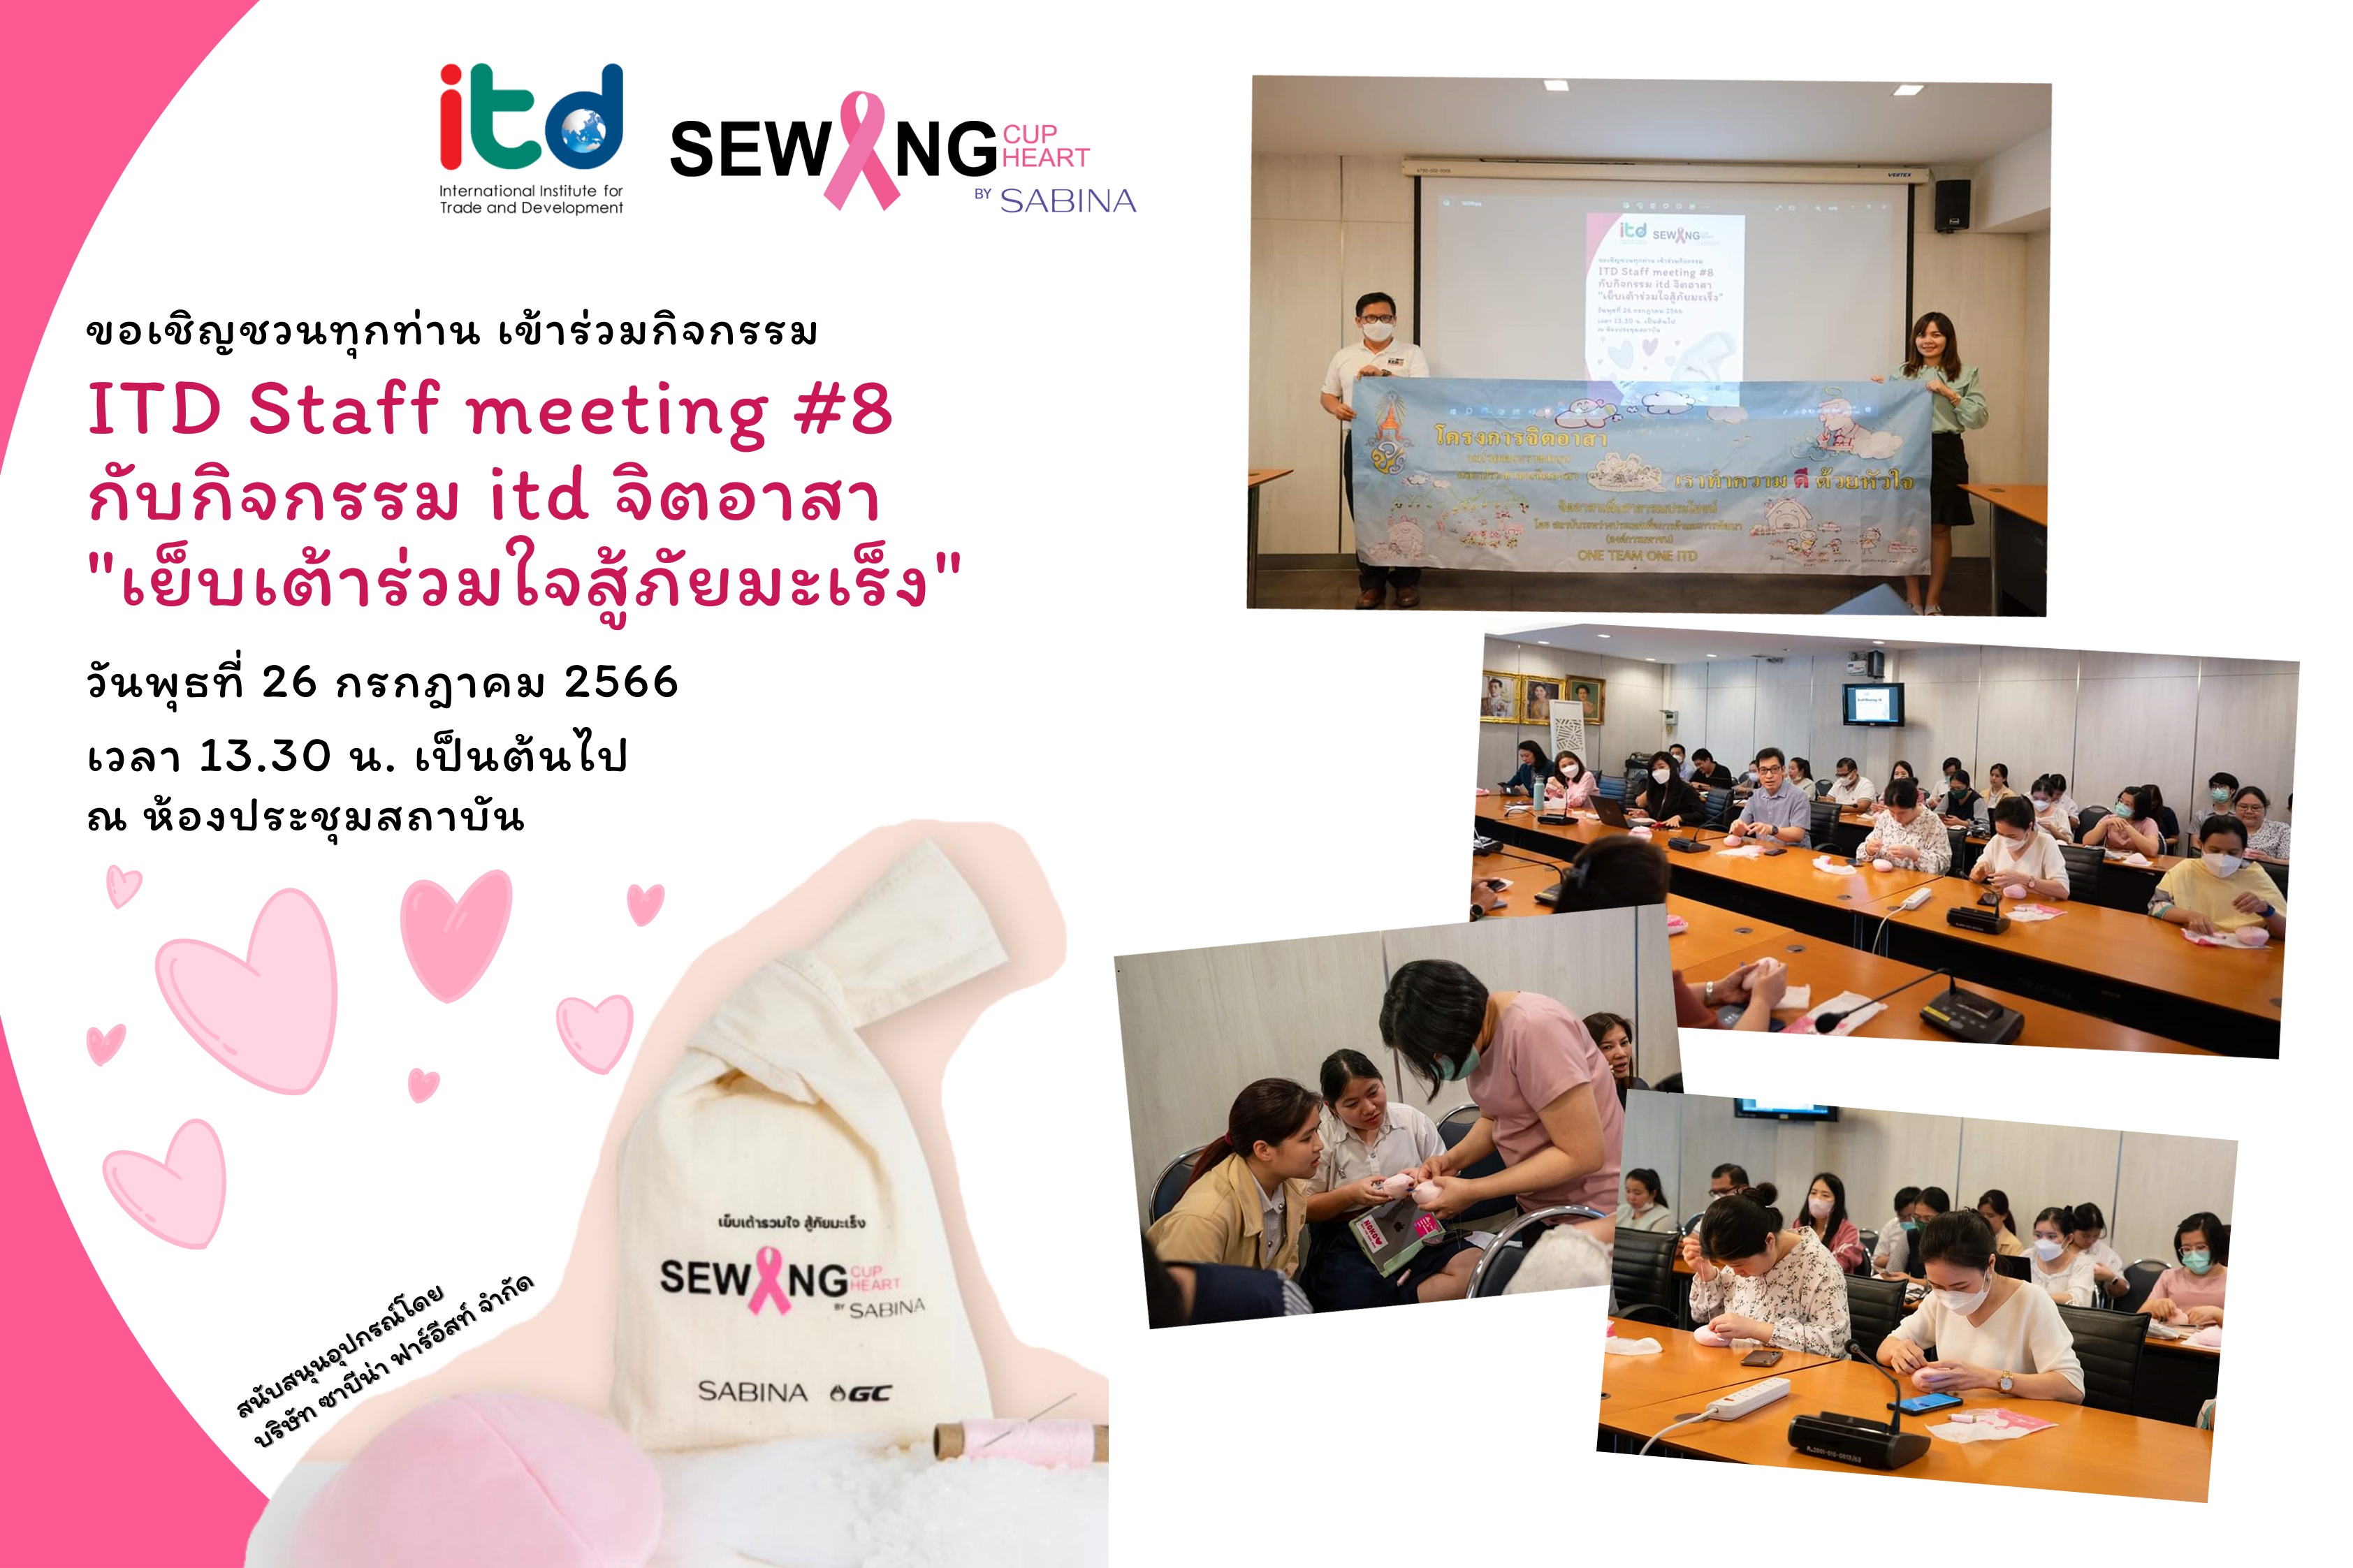 ซาบีน่า สนับสนุนอุปกรณ์เย็บเต้านมเทียมในกิจกรรม ITD Staff meeting#8 ของสถาบันระหว่างประเทศเพื่อการค้าและการพัฒนา (องค์การมหาชน)